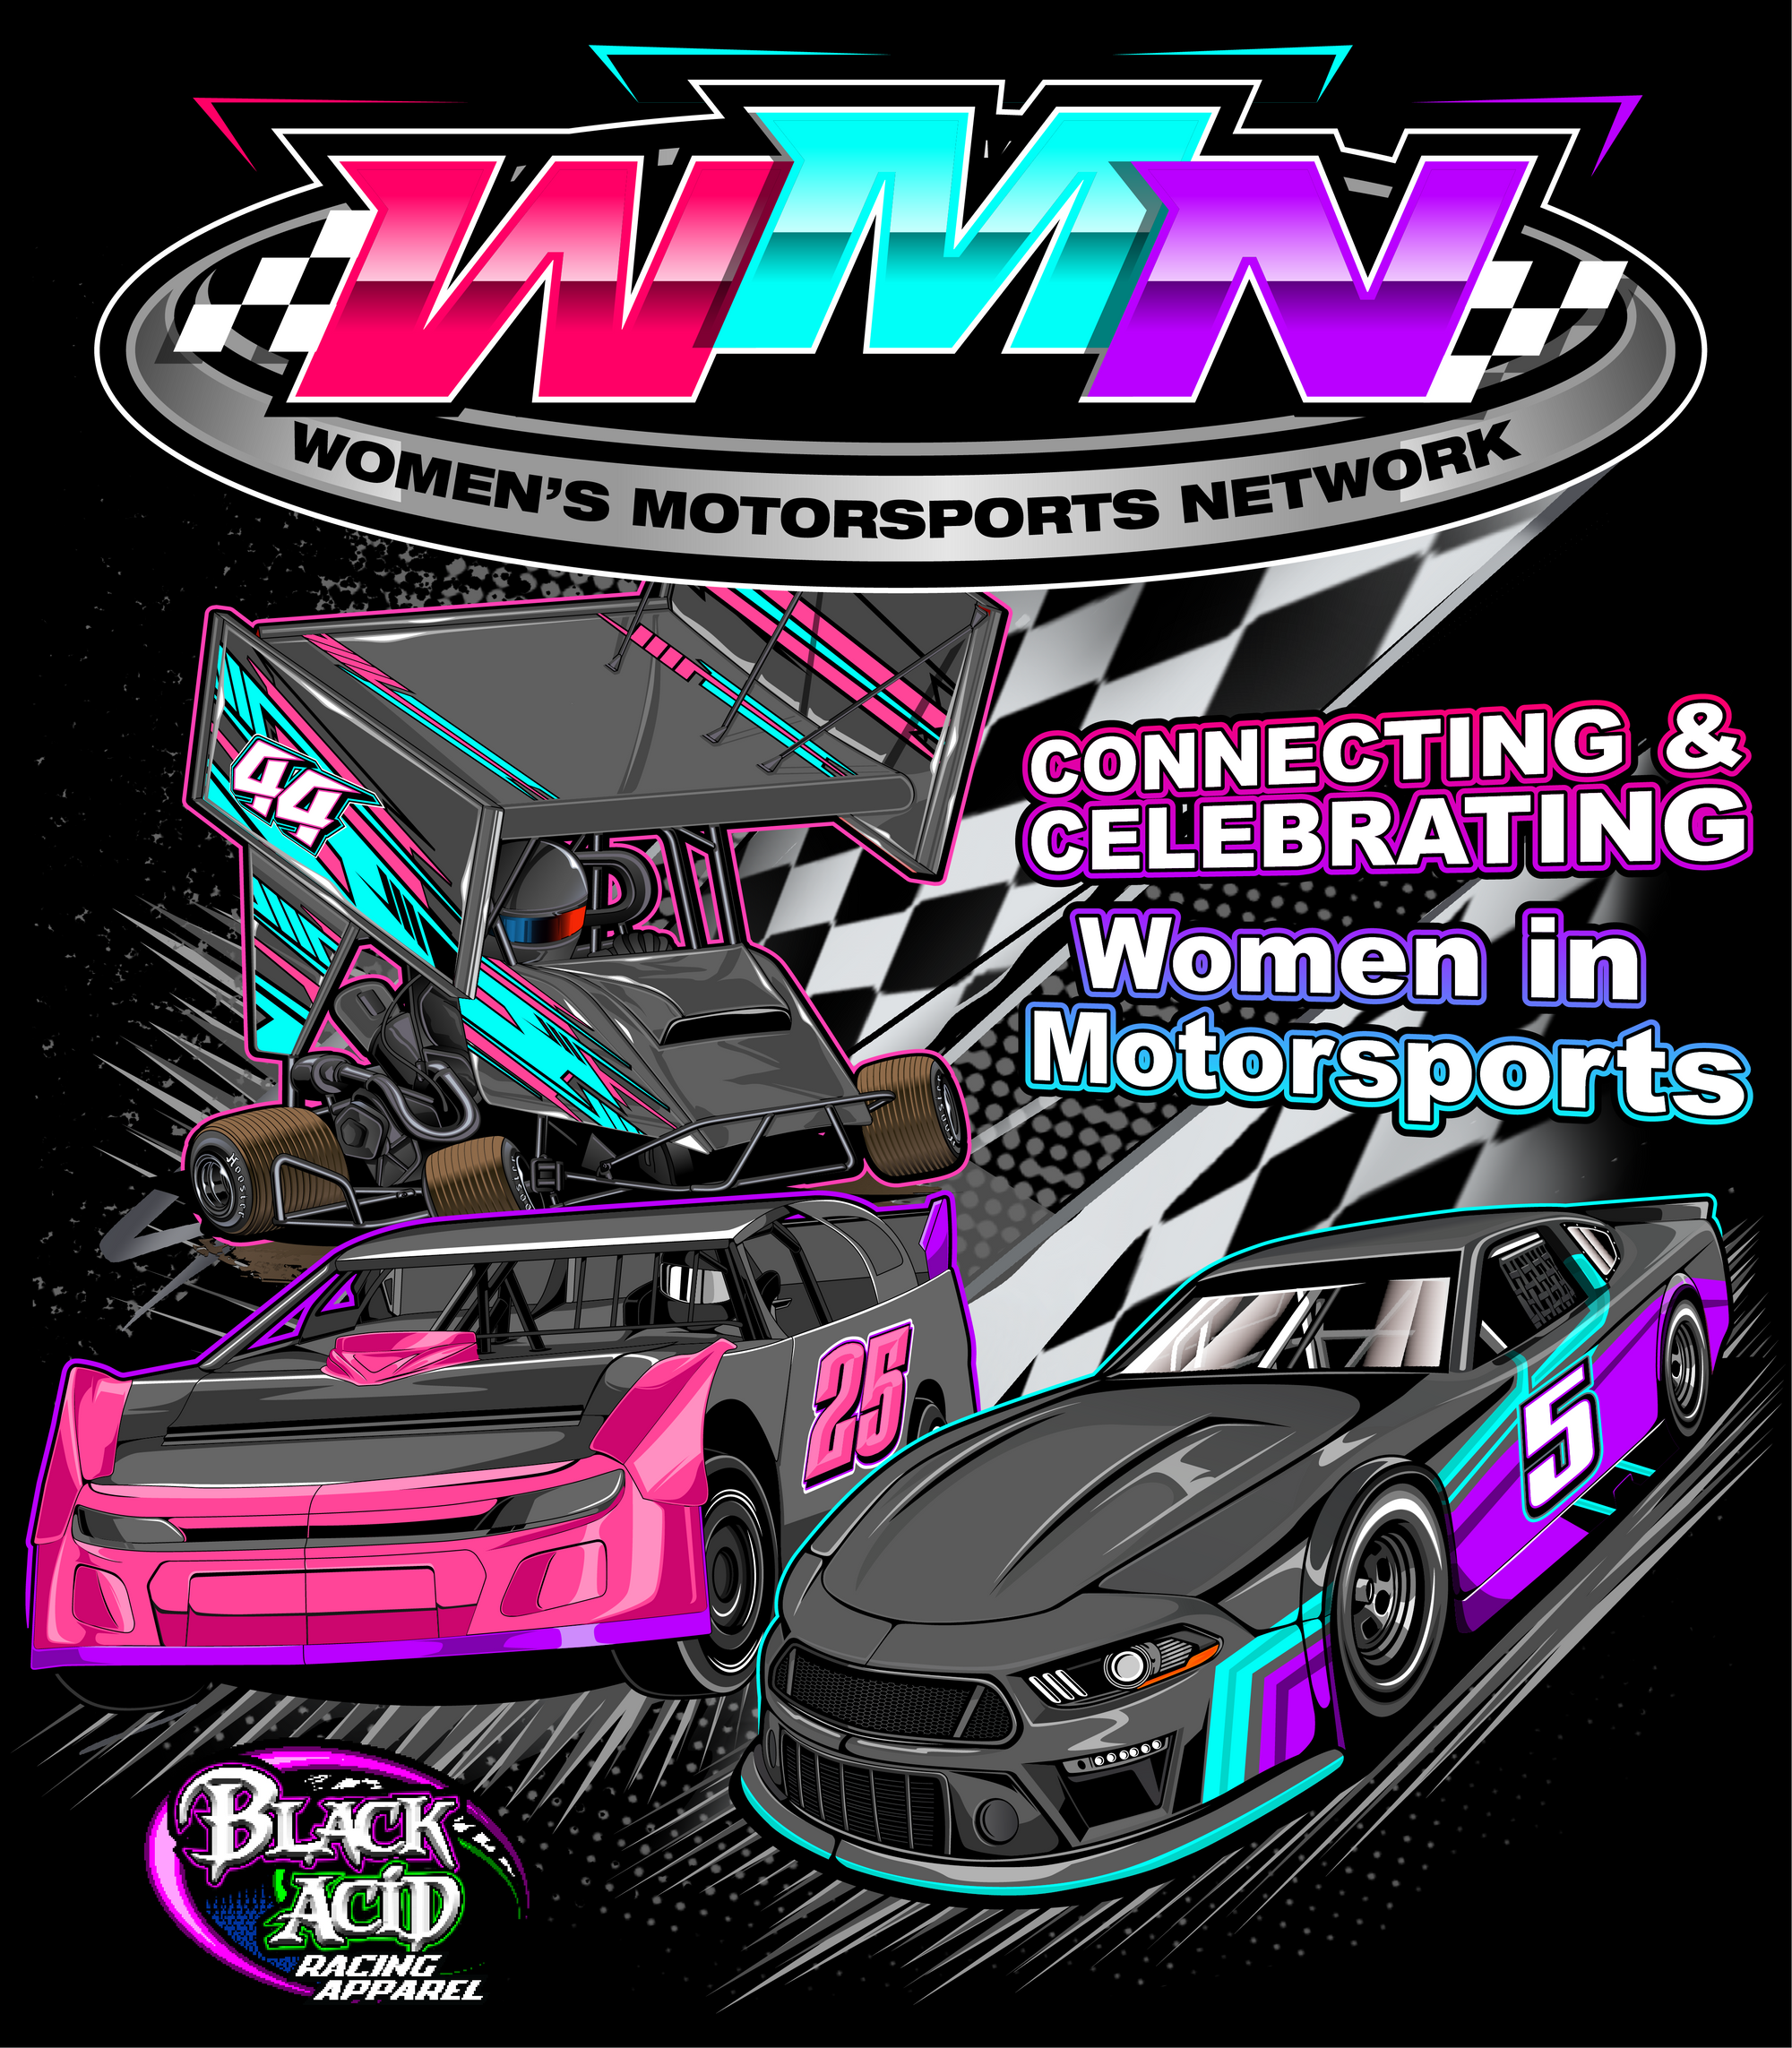 Women's Motorsports Network